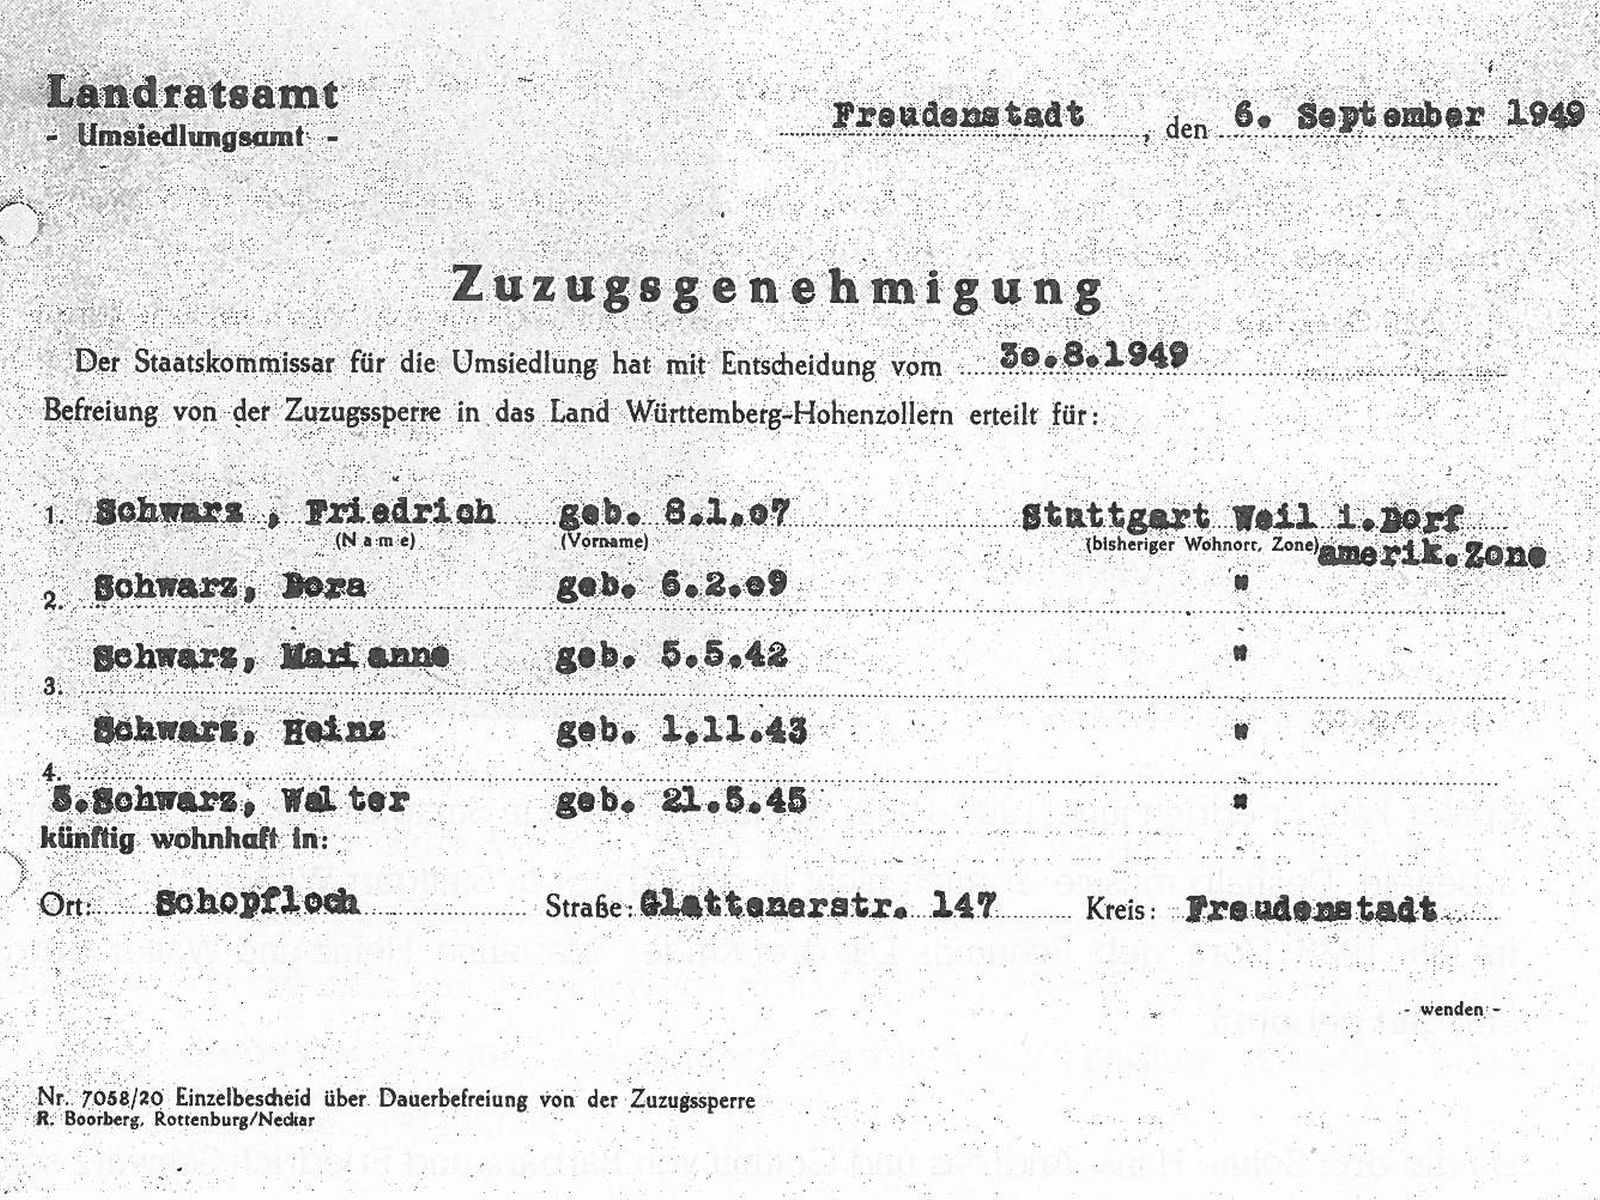  Schopflocher Skizzen Zuzugsgenehmigung für die Familie Friedrich Schwarz jun. - Bild wird mit einem Klick vergrößert 